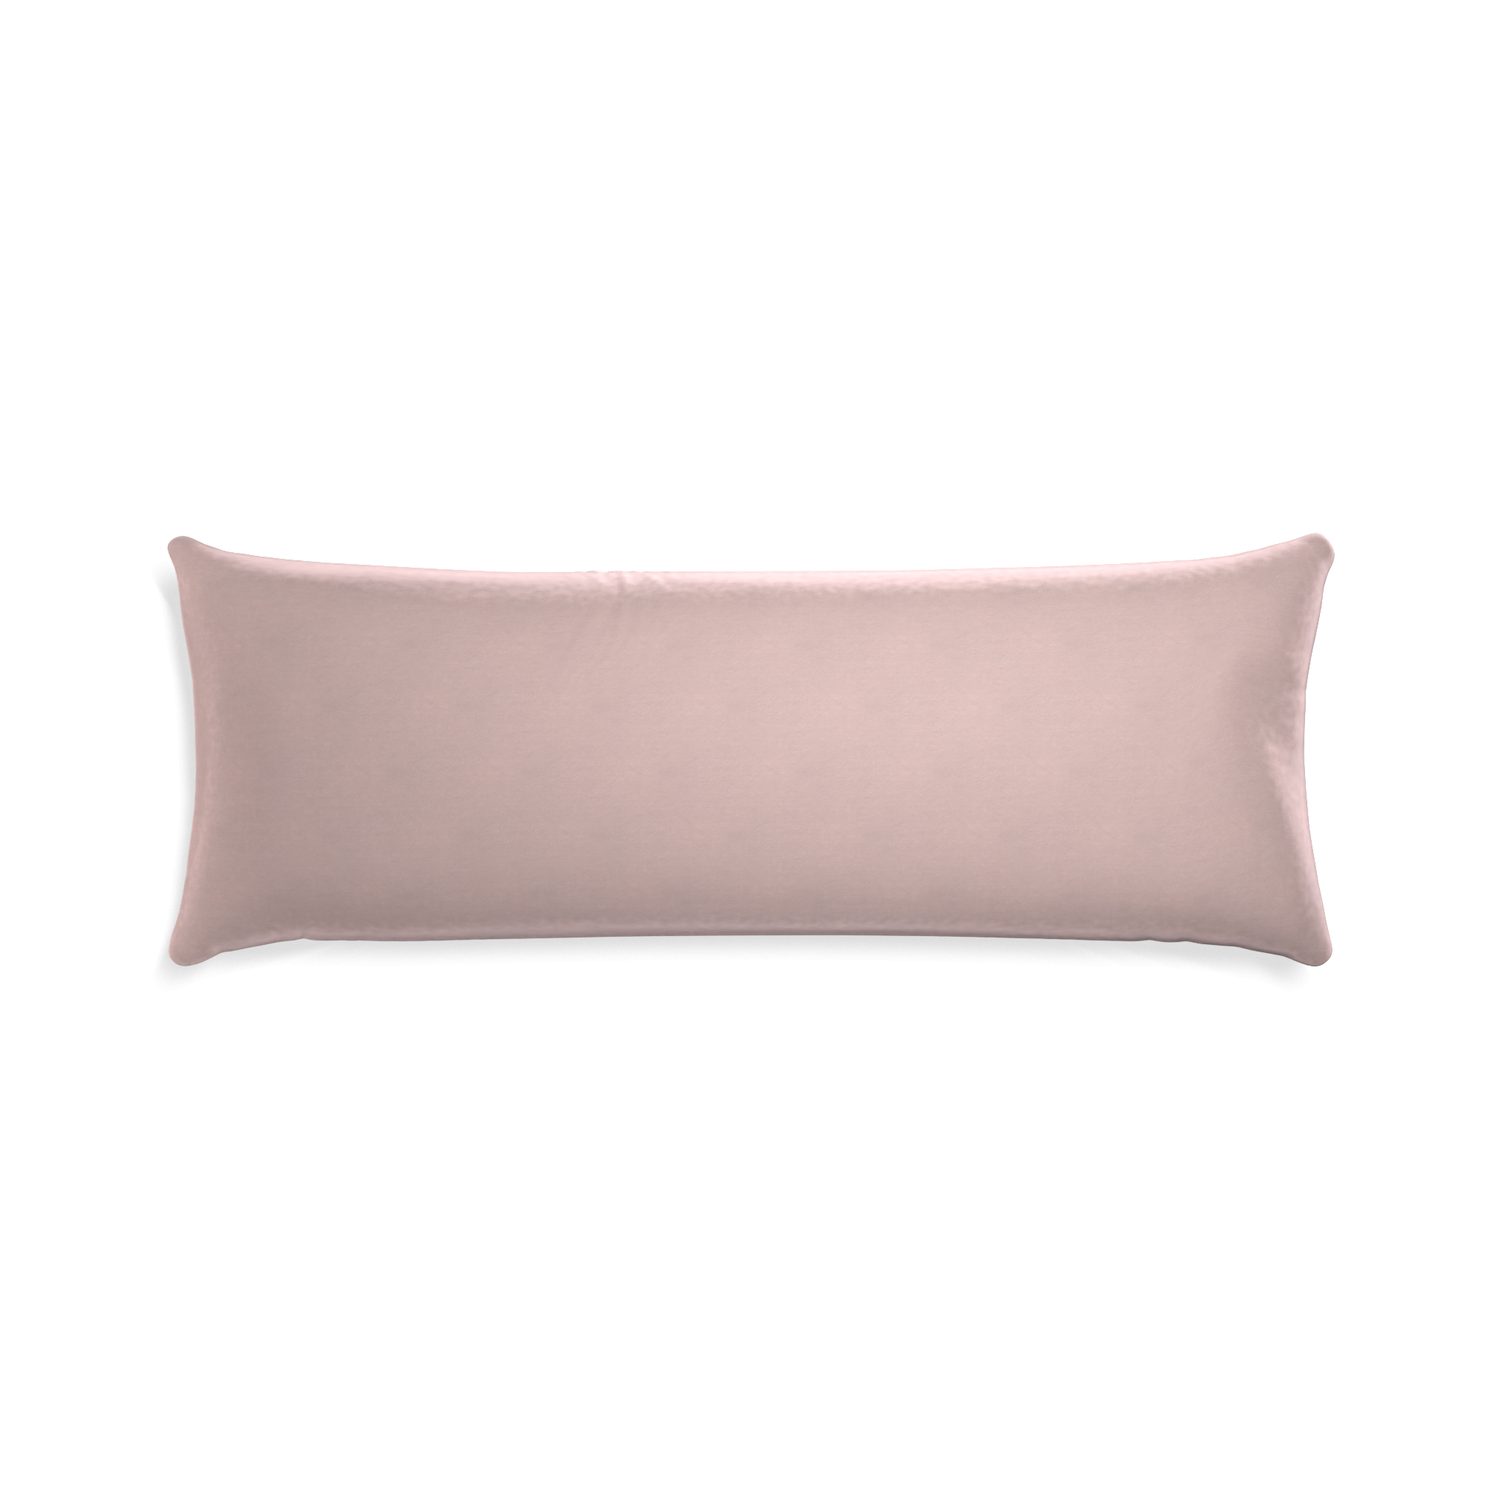 rectangle light pink velvet pillow